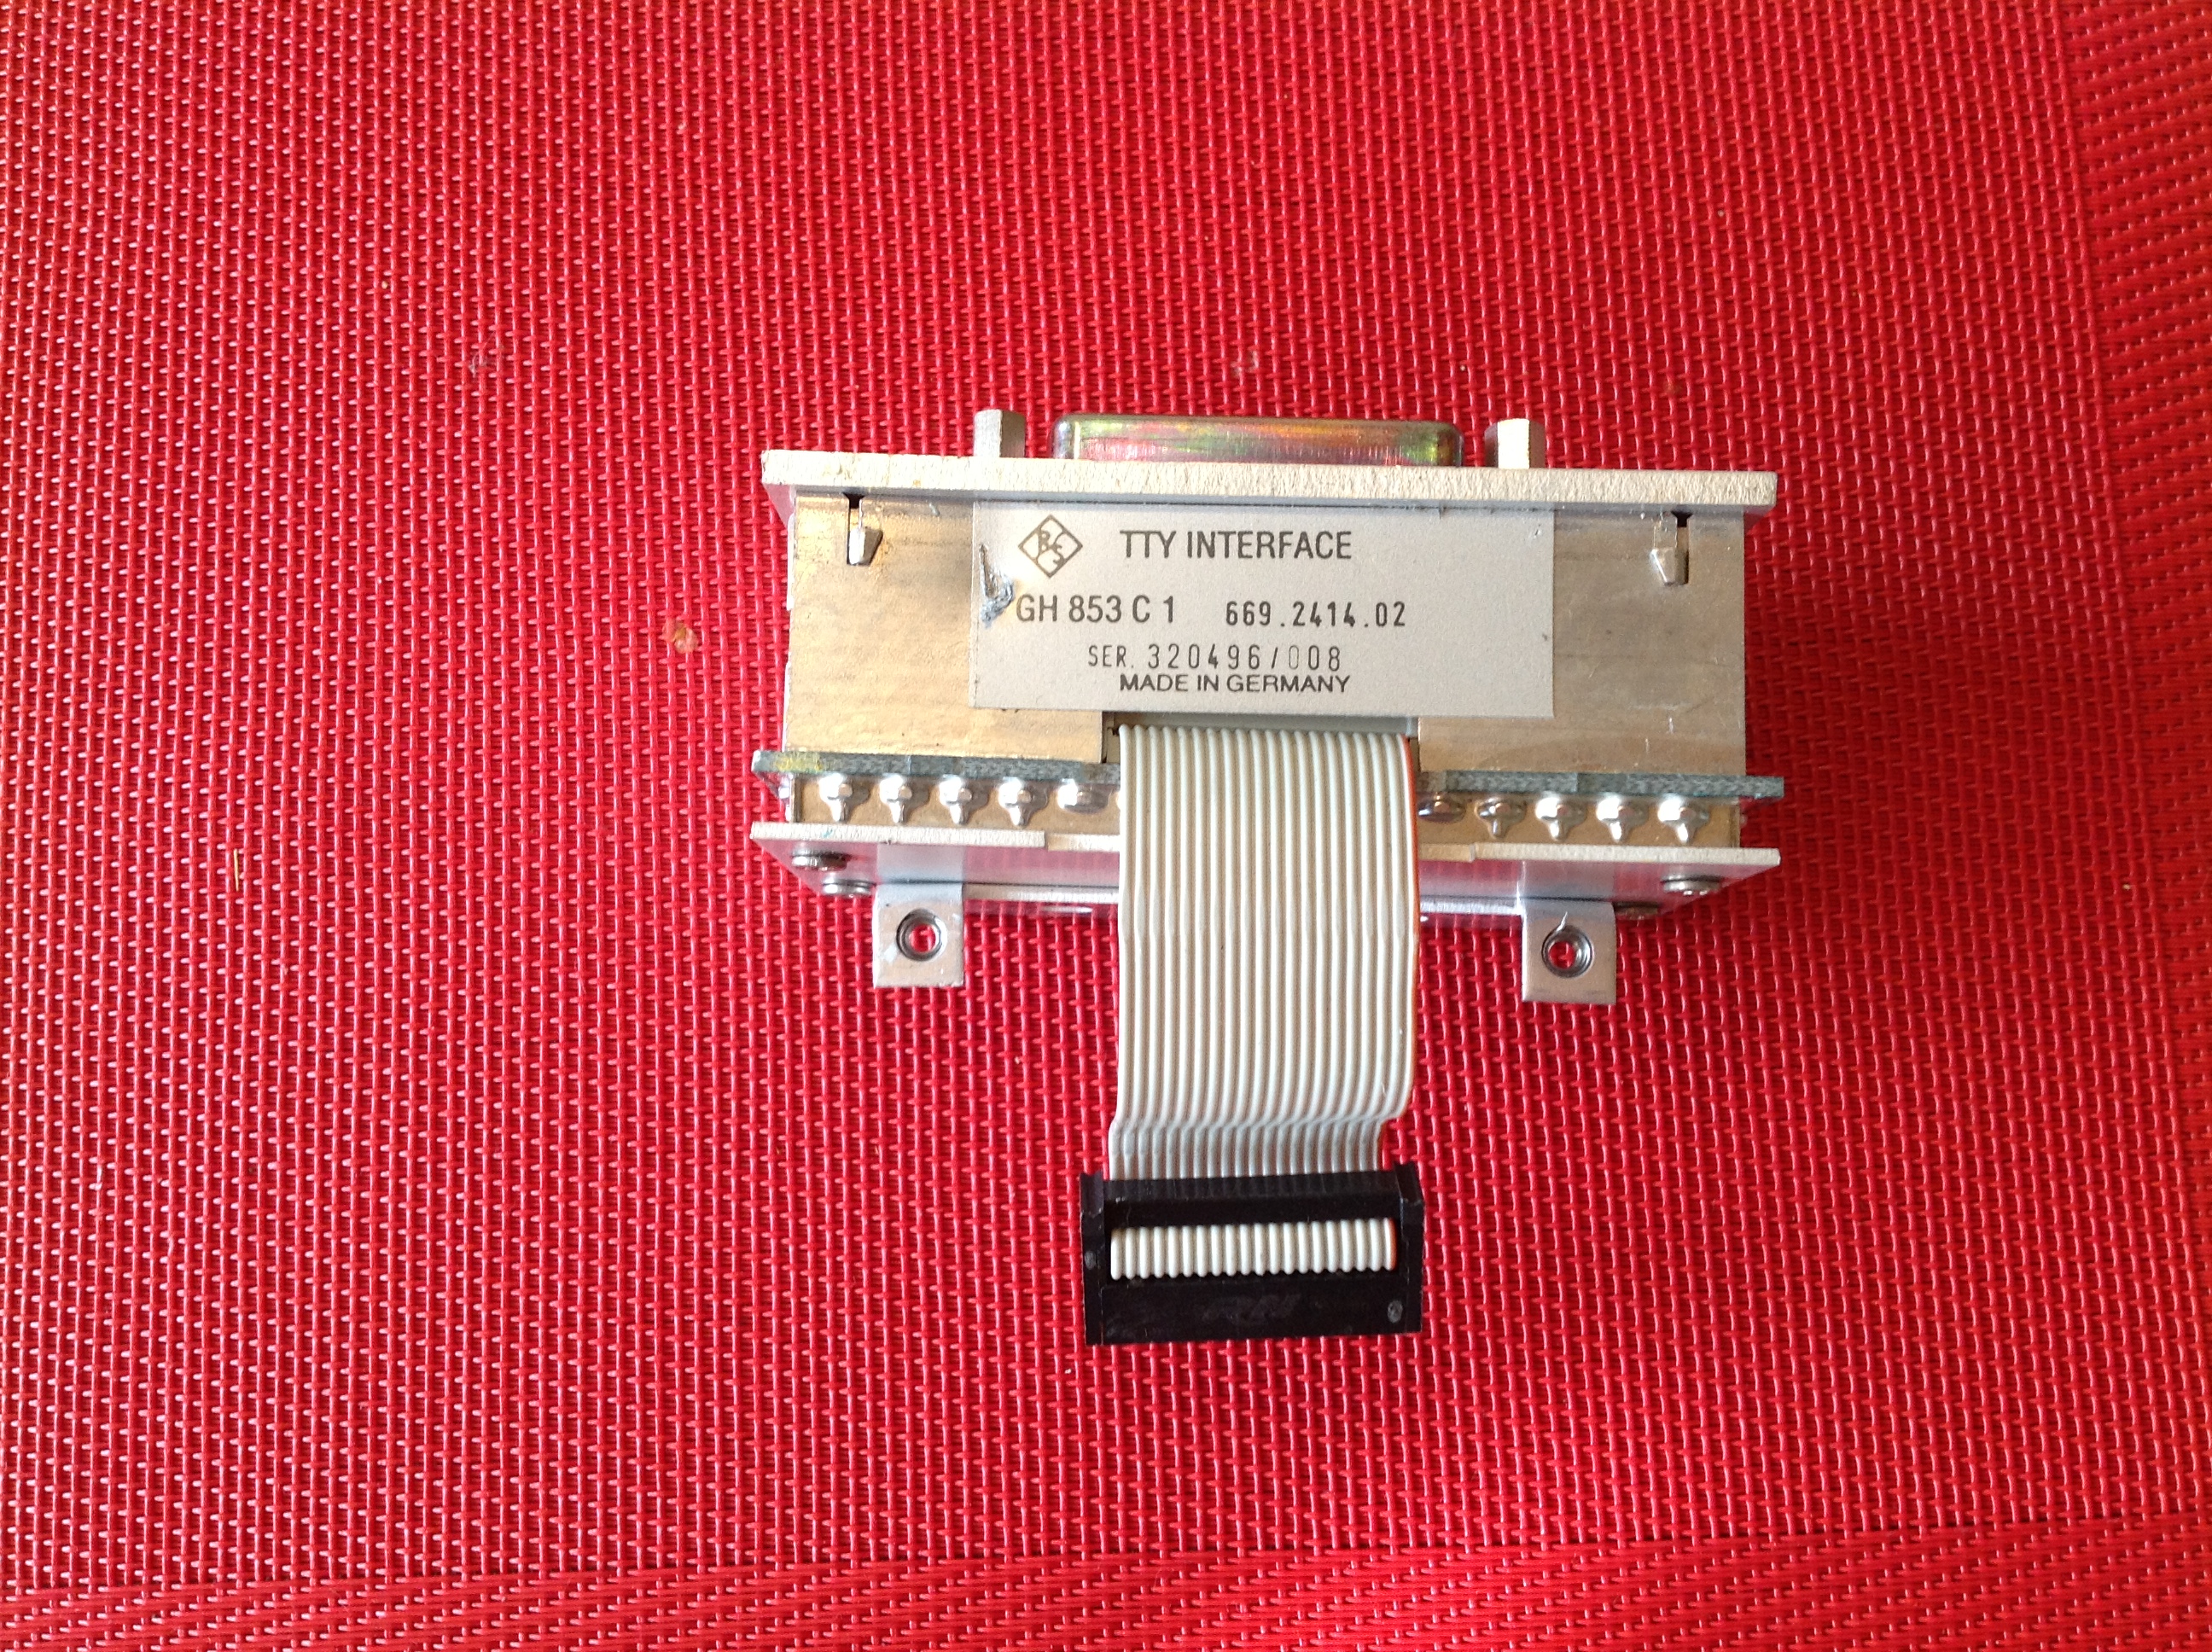 Rohde & Schwarz Sender/Empfänger XK 852 C1 TTY Interface GH 853 C1